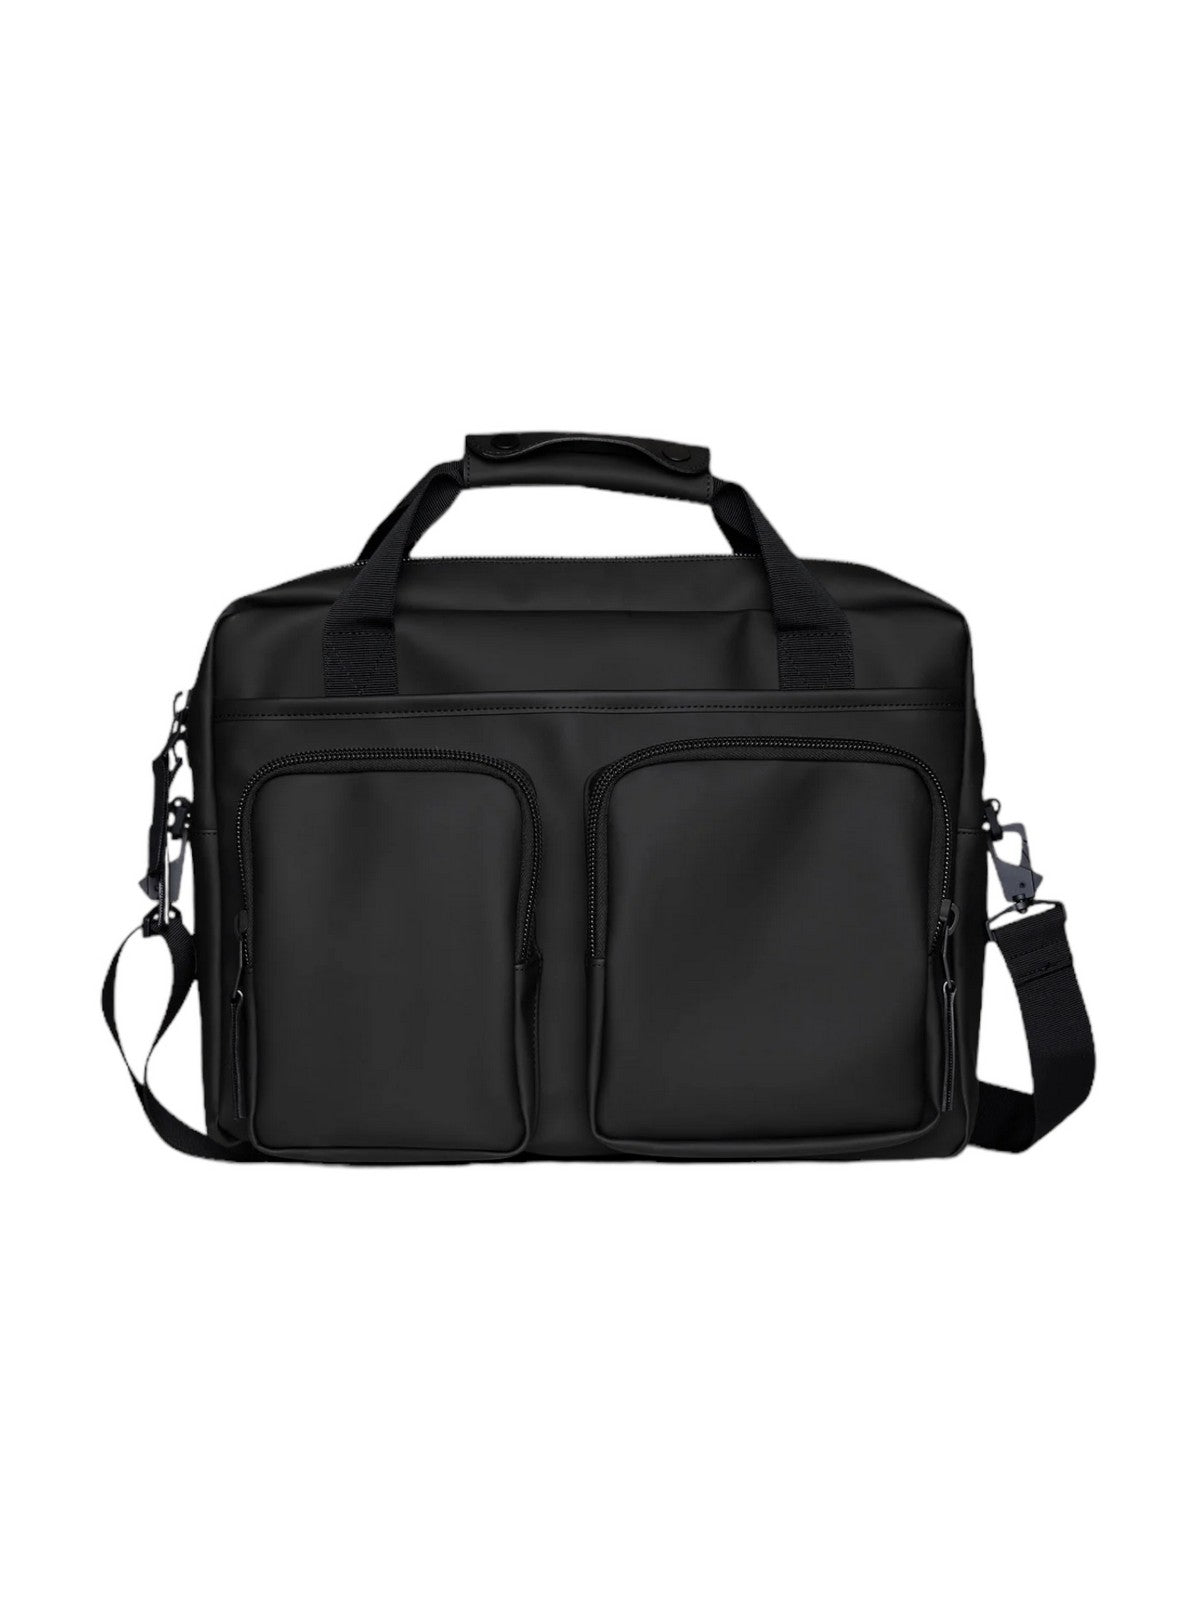 RAINS Unisexe Adulte Texel Tech Bag W3 14250 01 Noir